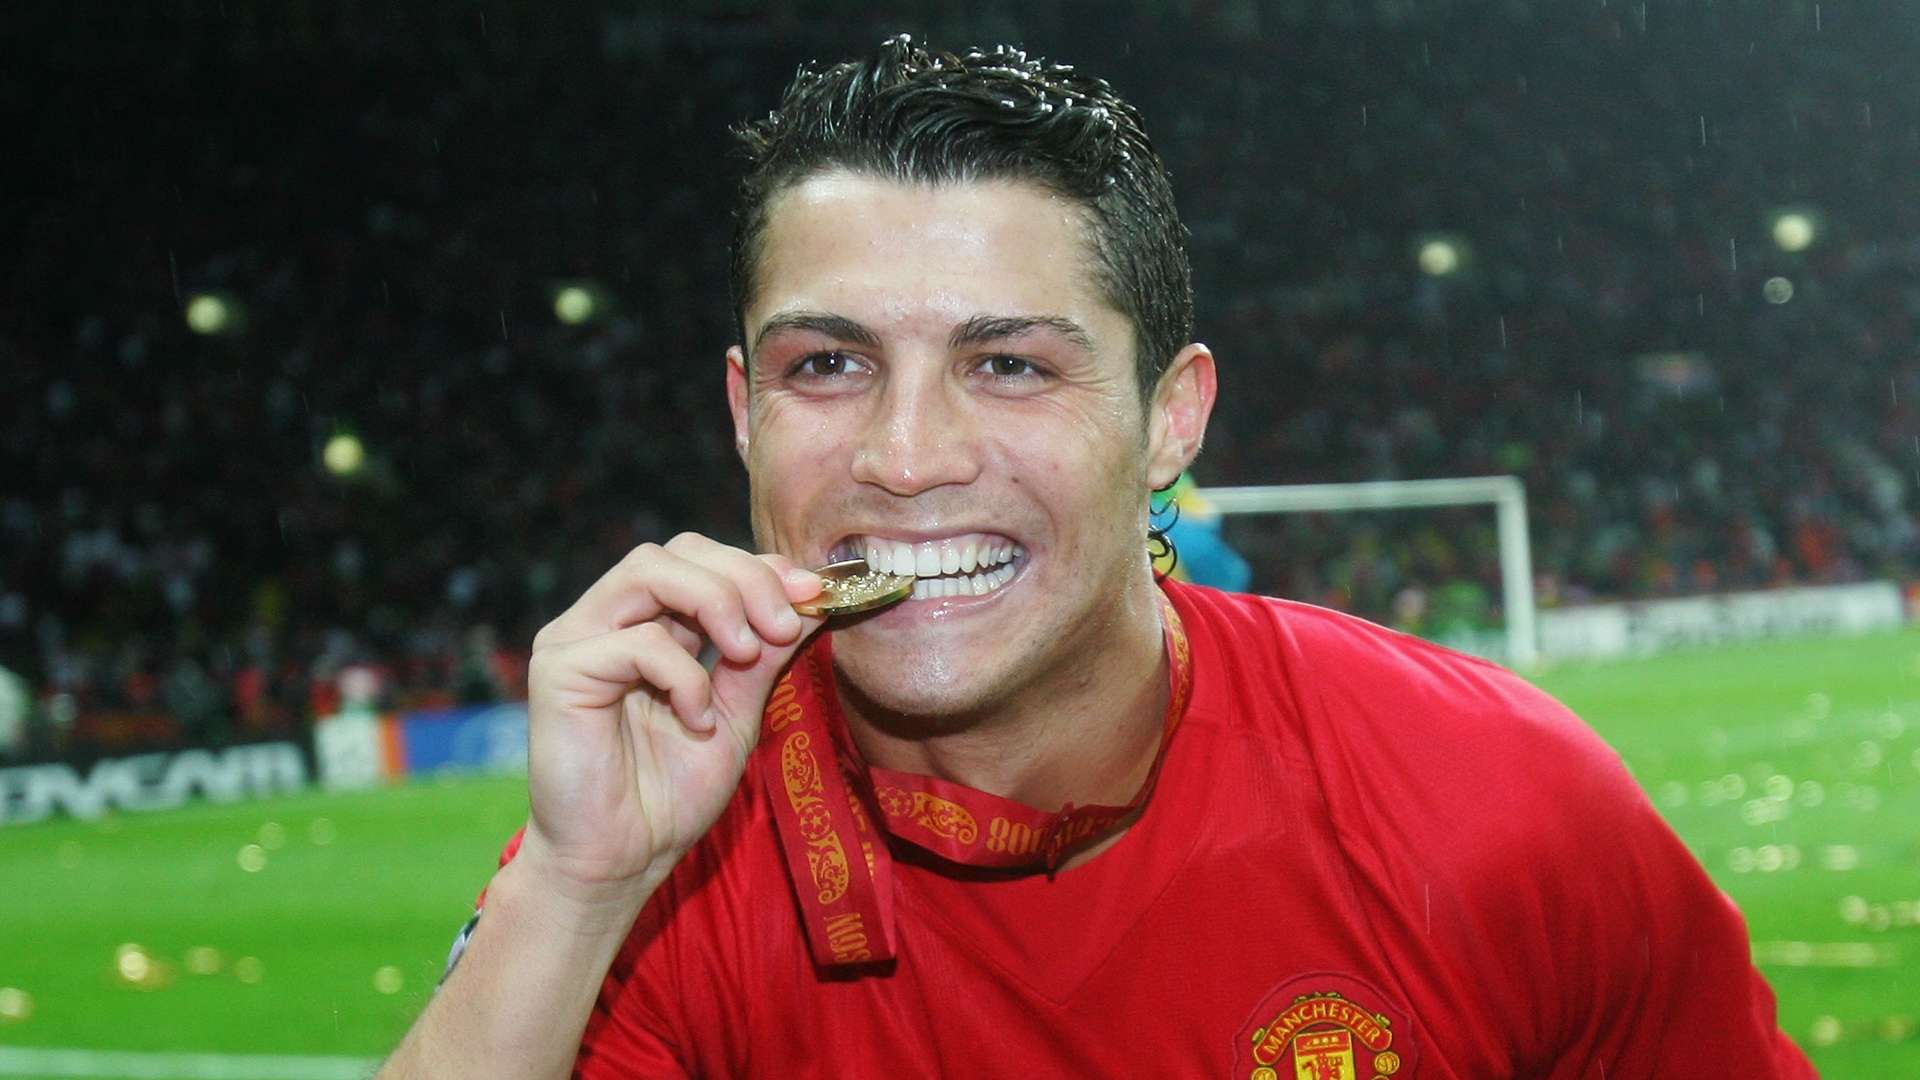 Cristiano Ronaldo Manchester United 2008 Champions League final